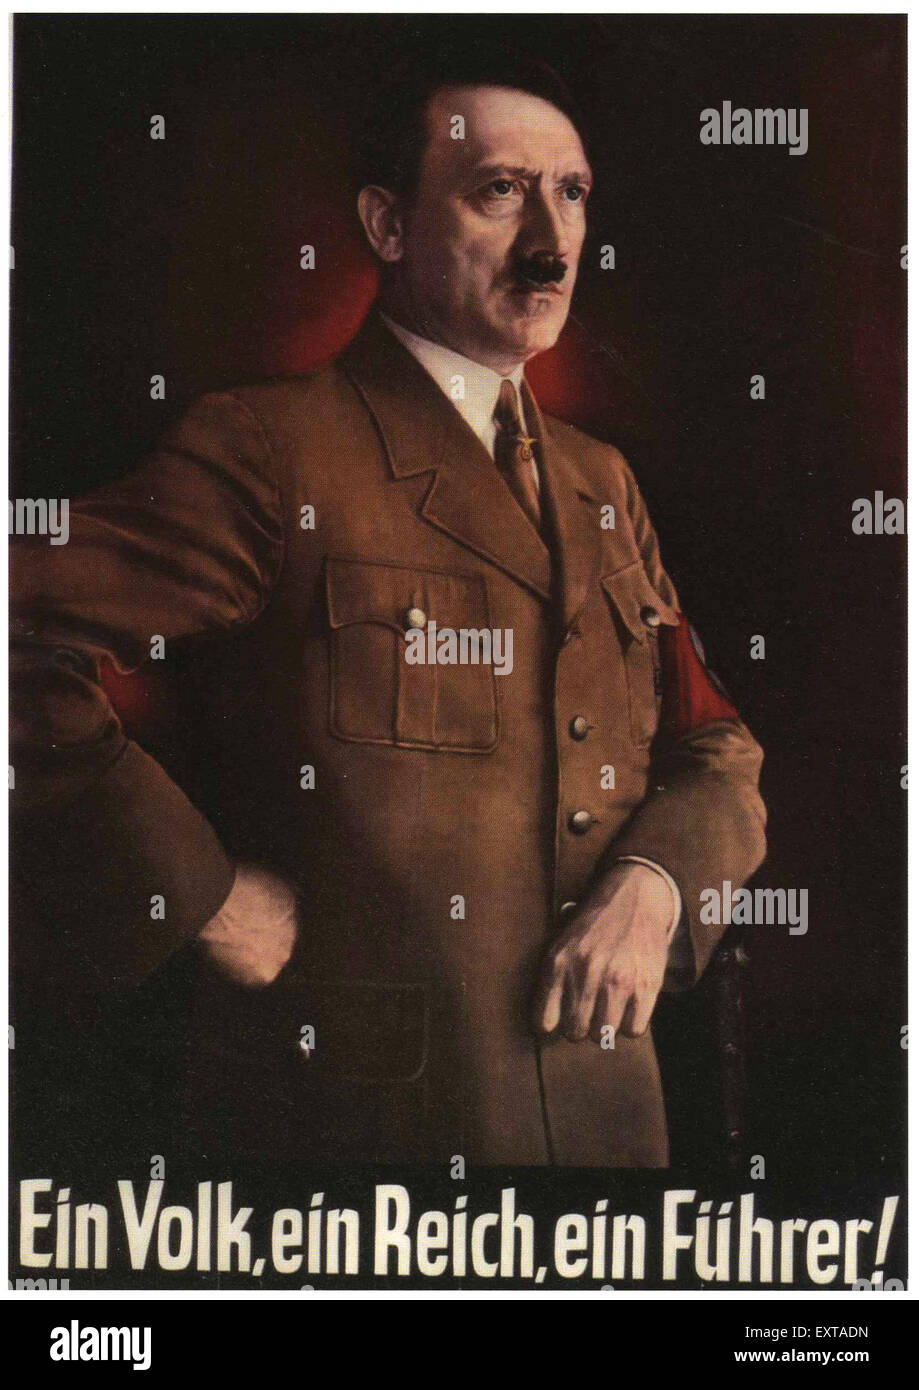 1930s-germany-hitler-poster-EXTADN.jpg